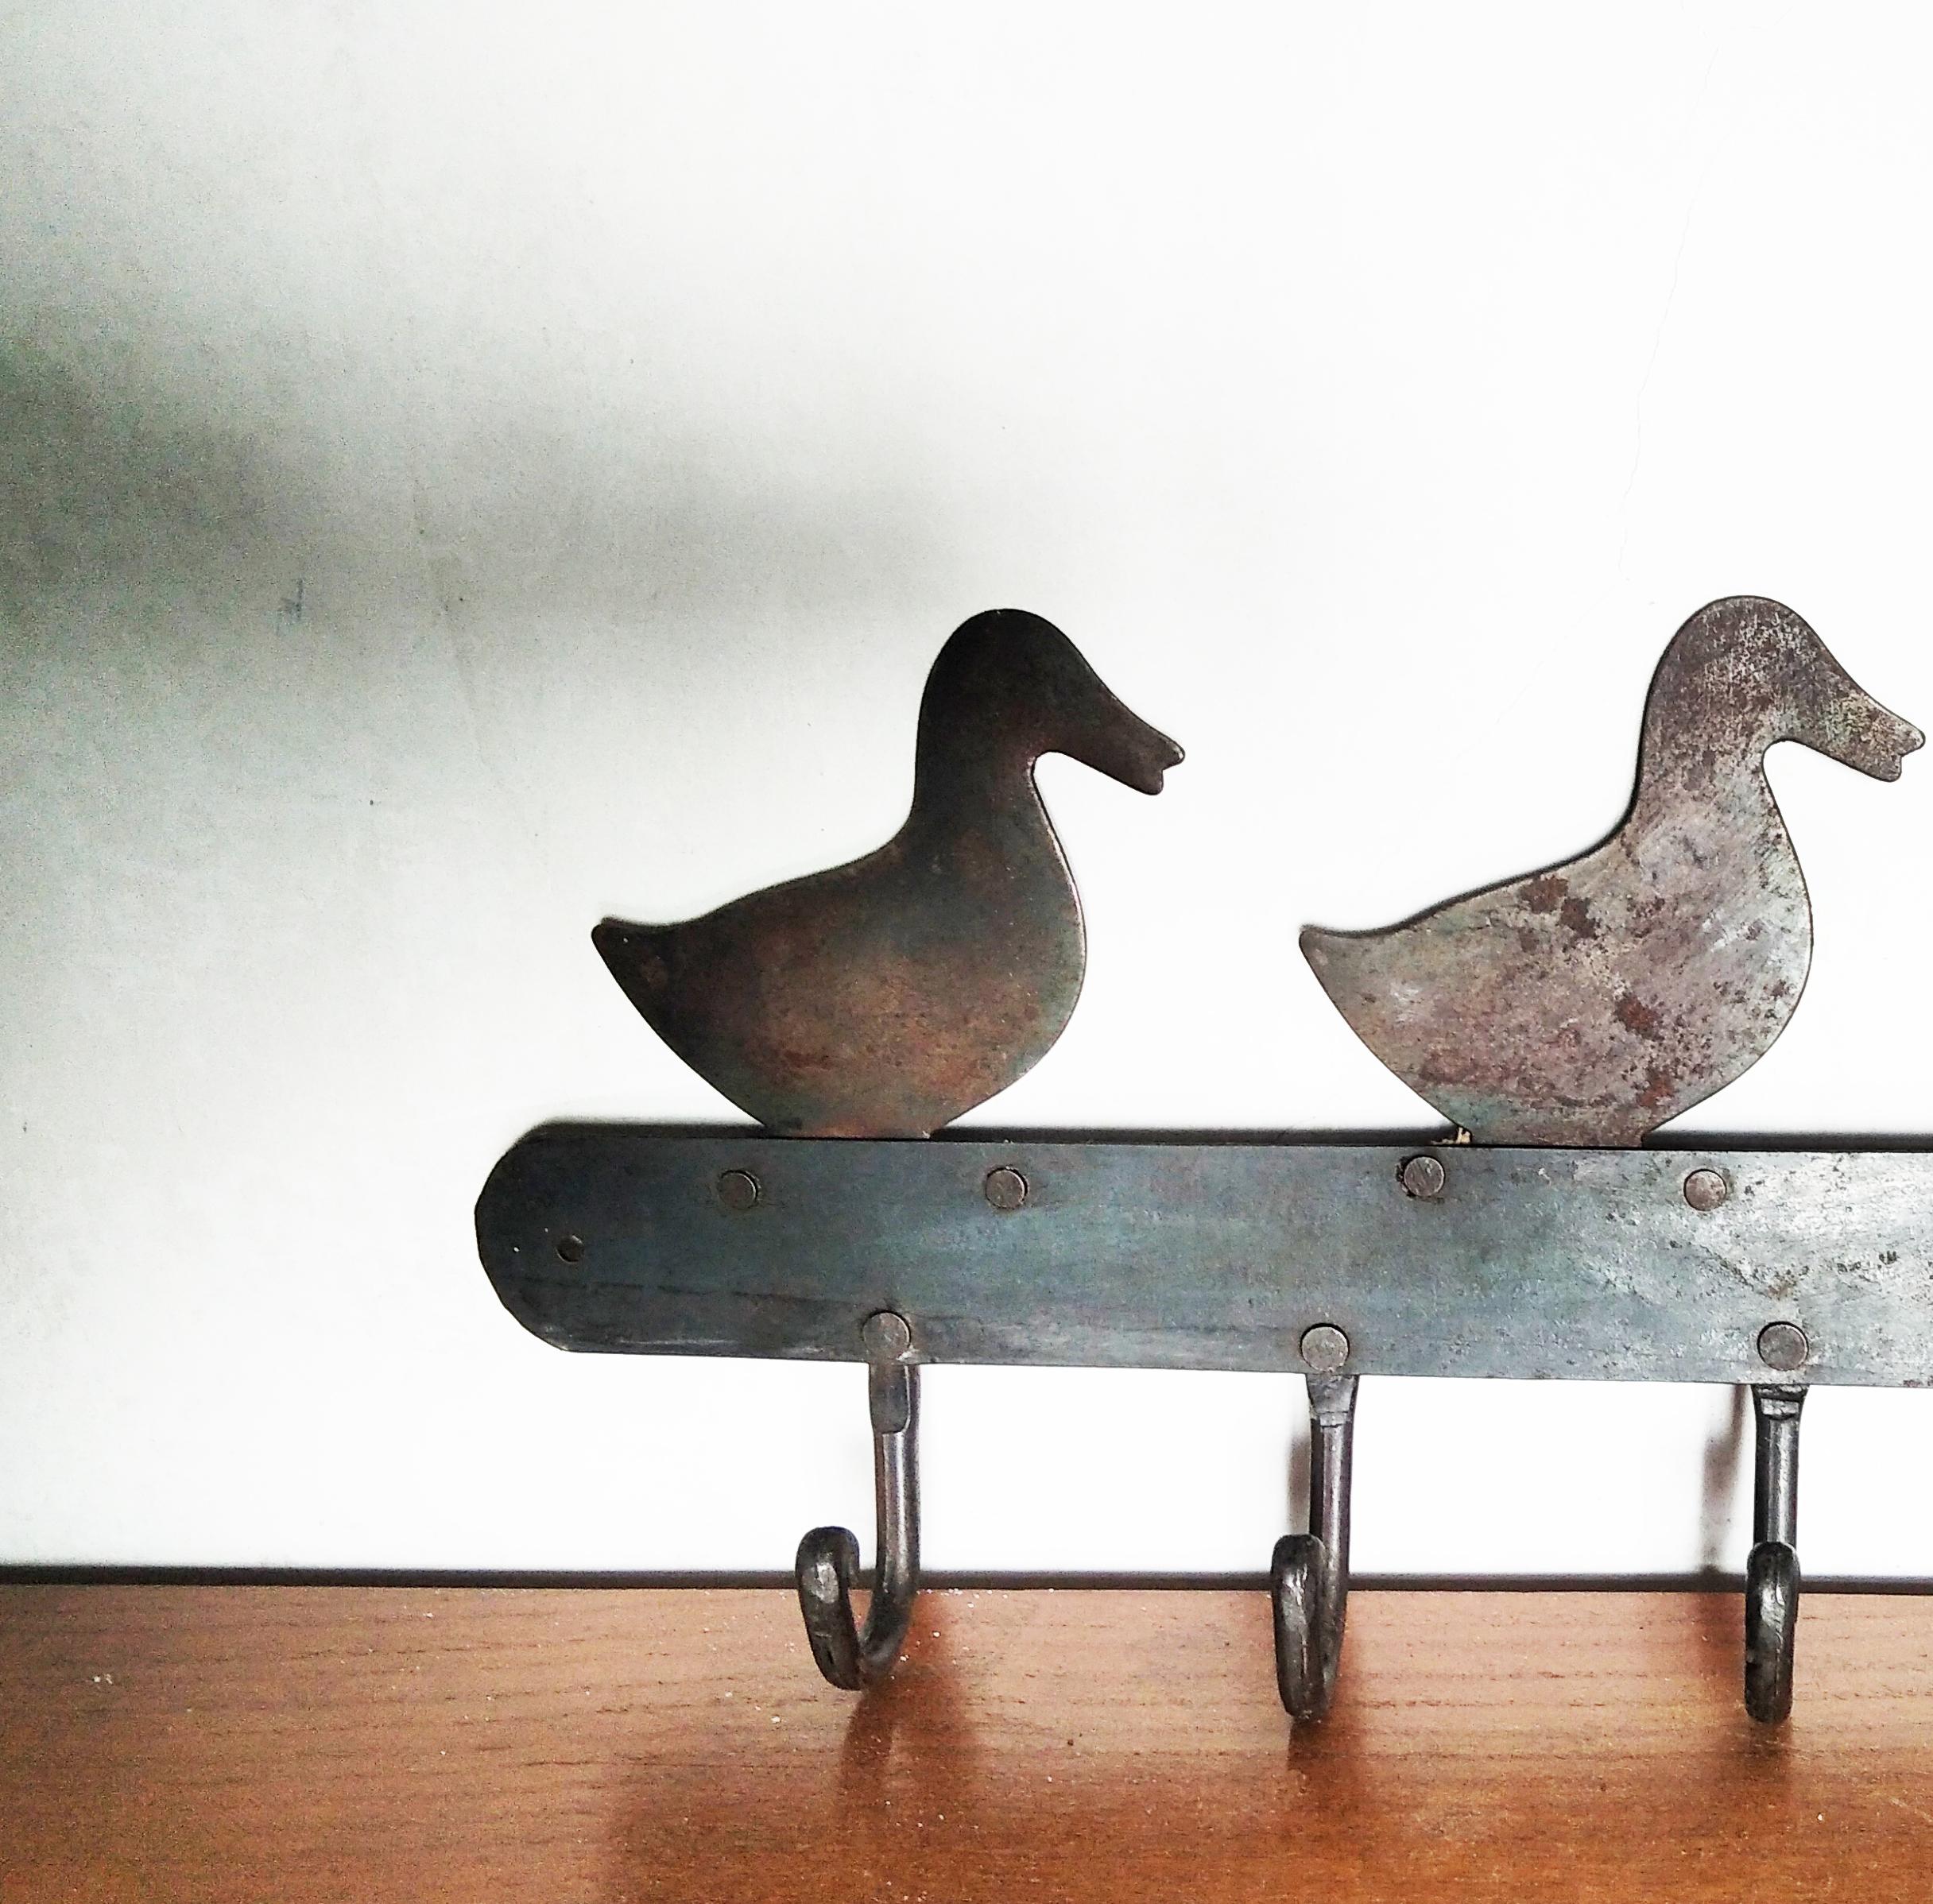 3 ducks on wall